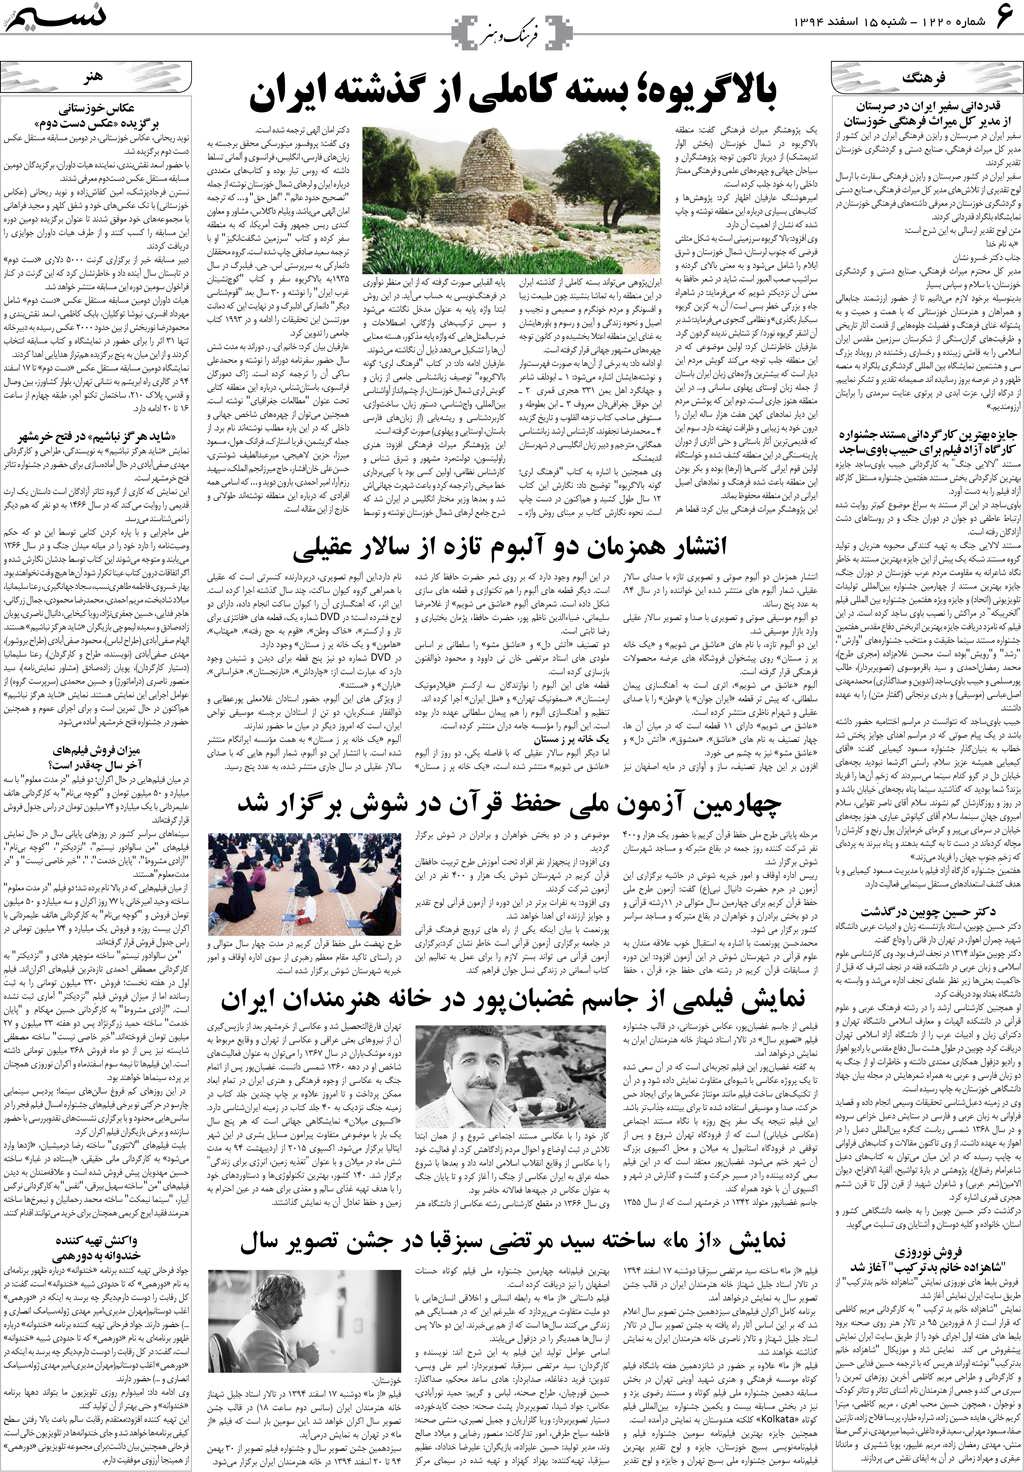 صفحه فرهنگ و هنر روزنامه نسیم شماره 1220